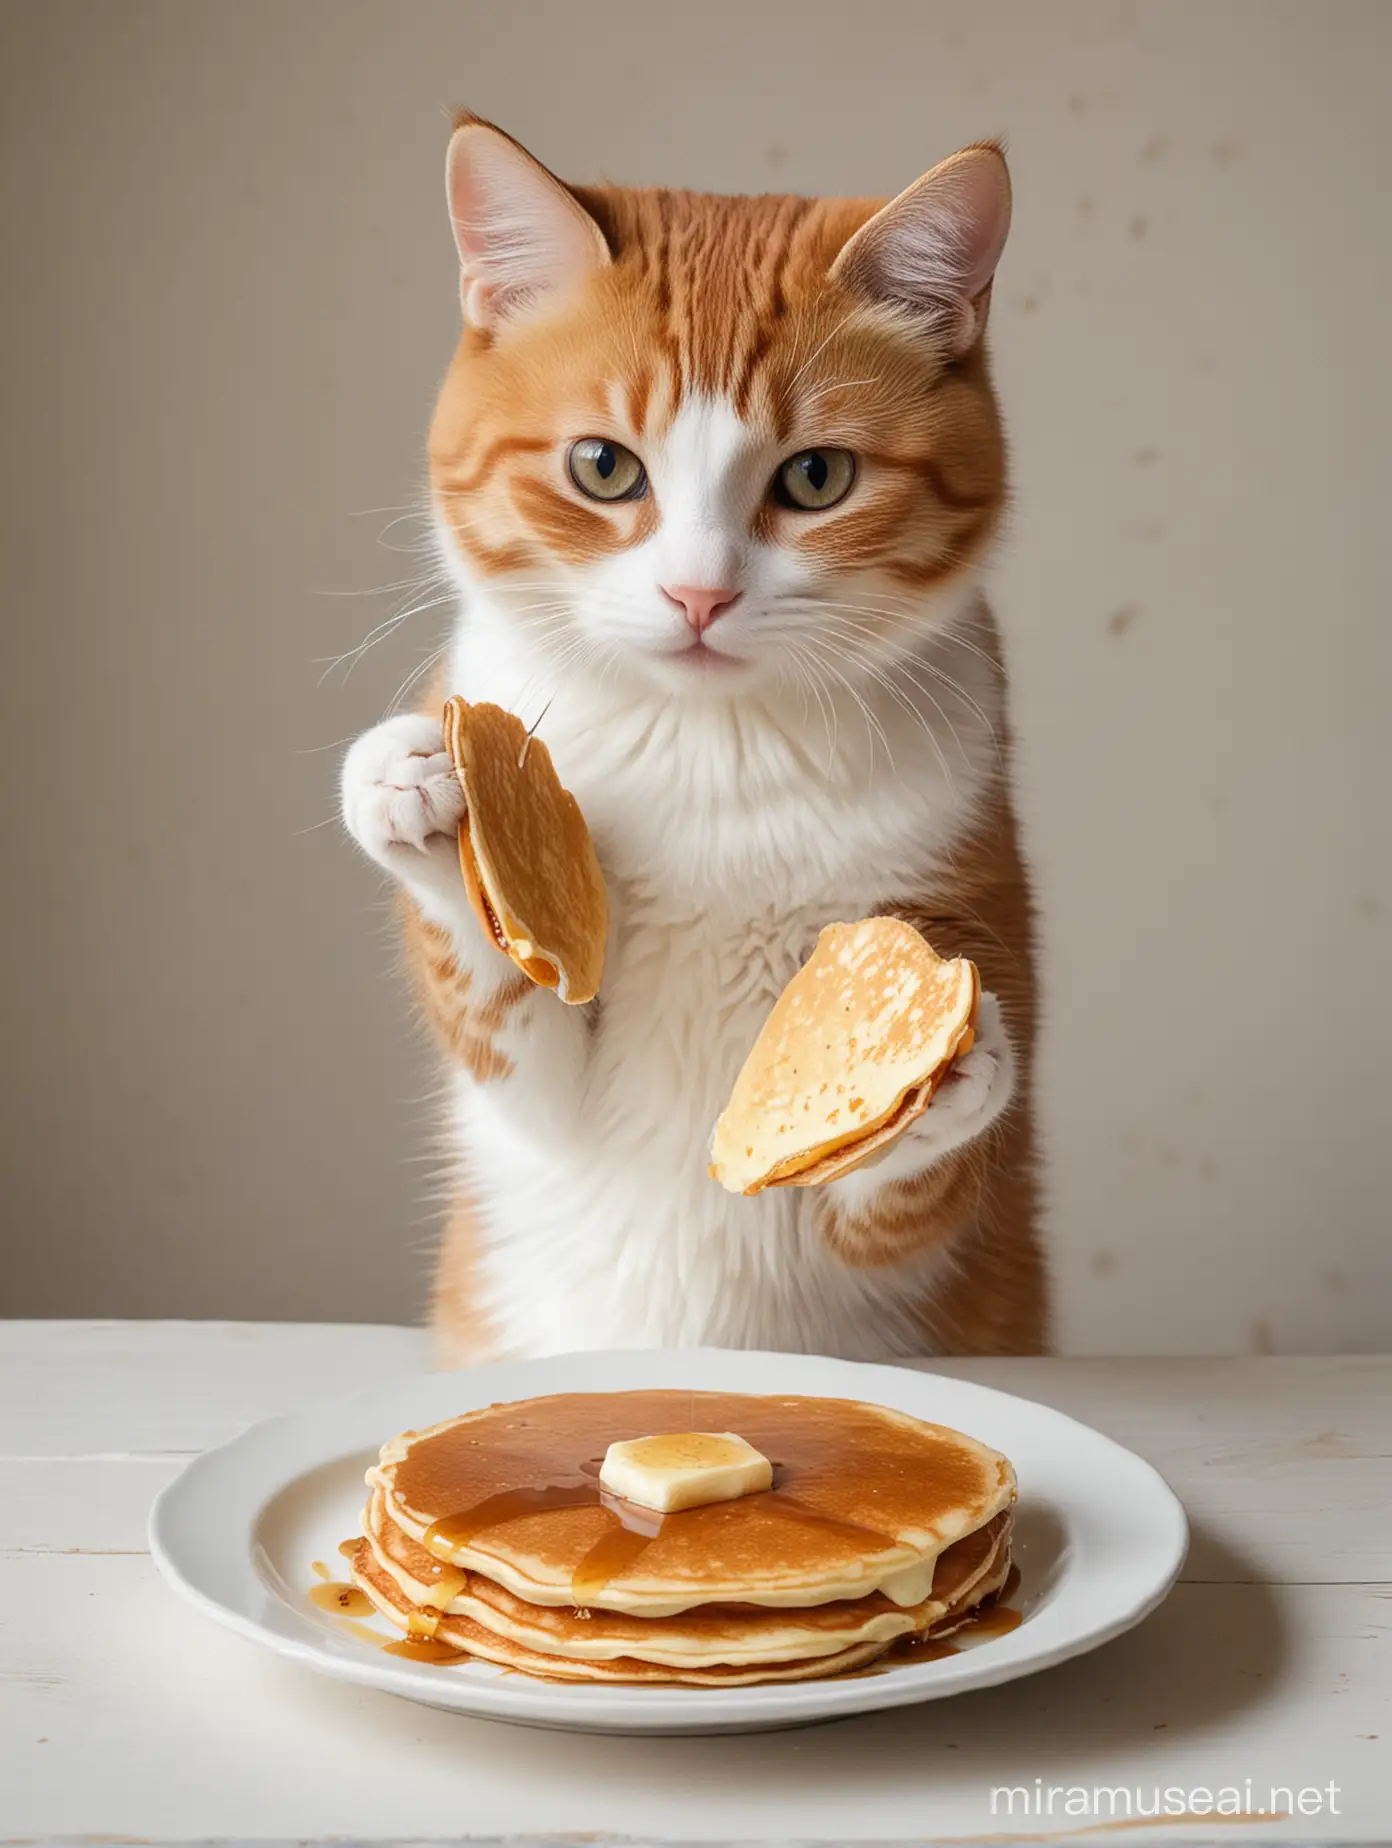 Kitty eating pancakes